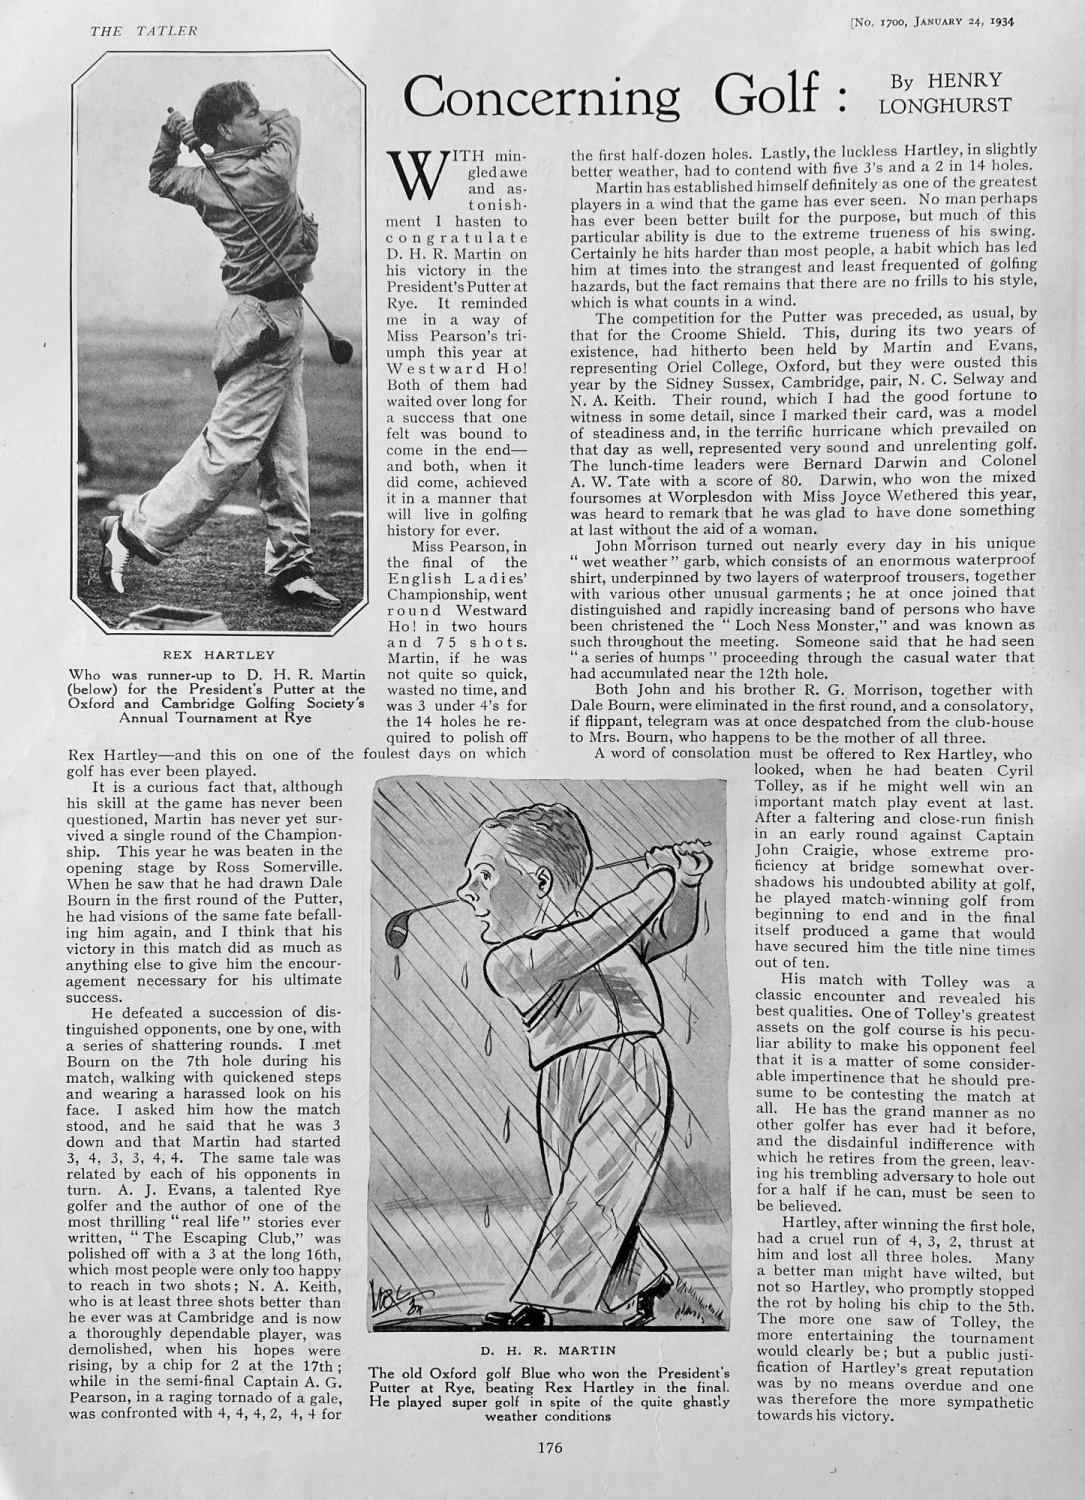 Concerning Golf.   Written by Henry Longhurst.  1934.